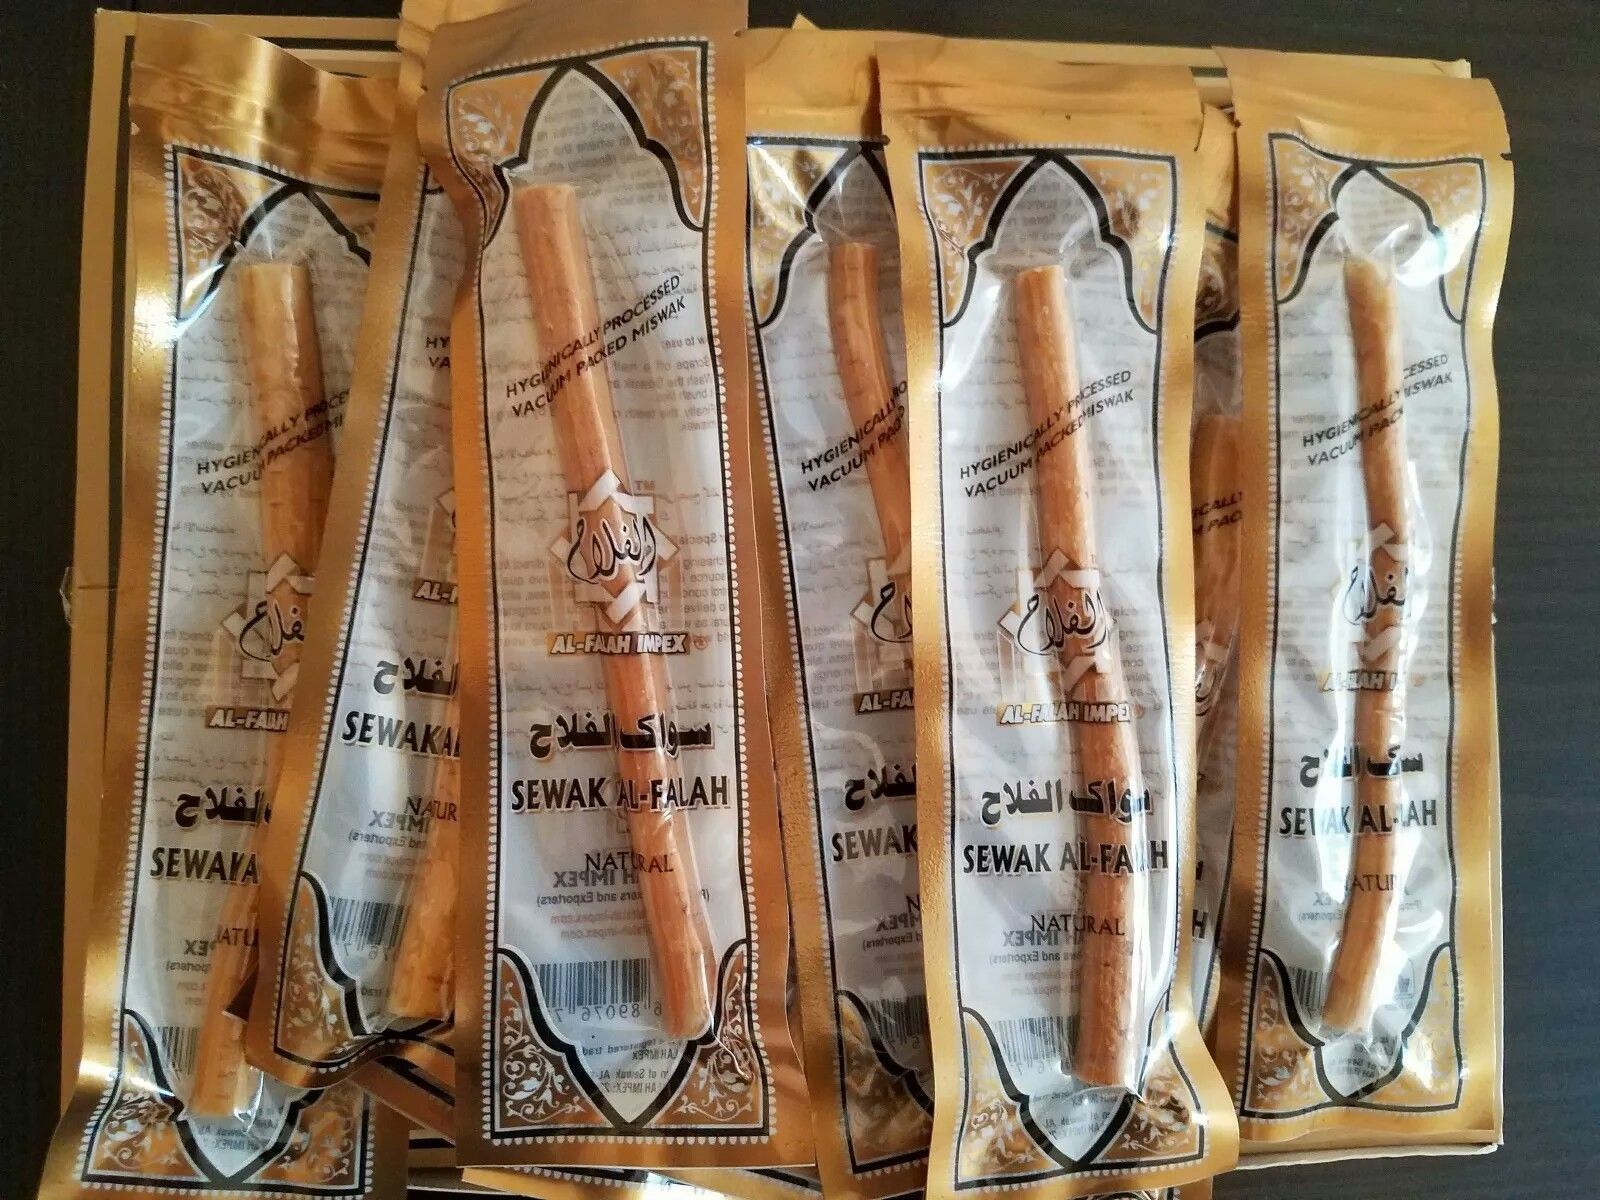 Sewak Al-Falah (Miswak) Natural Toothbrush Sticks Tooth Cleaning Sticks 5packs - $10.99